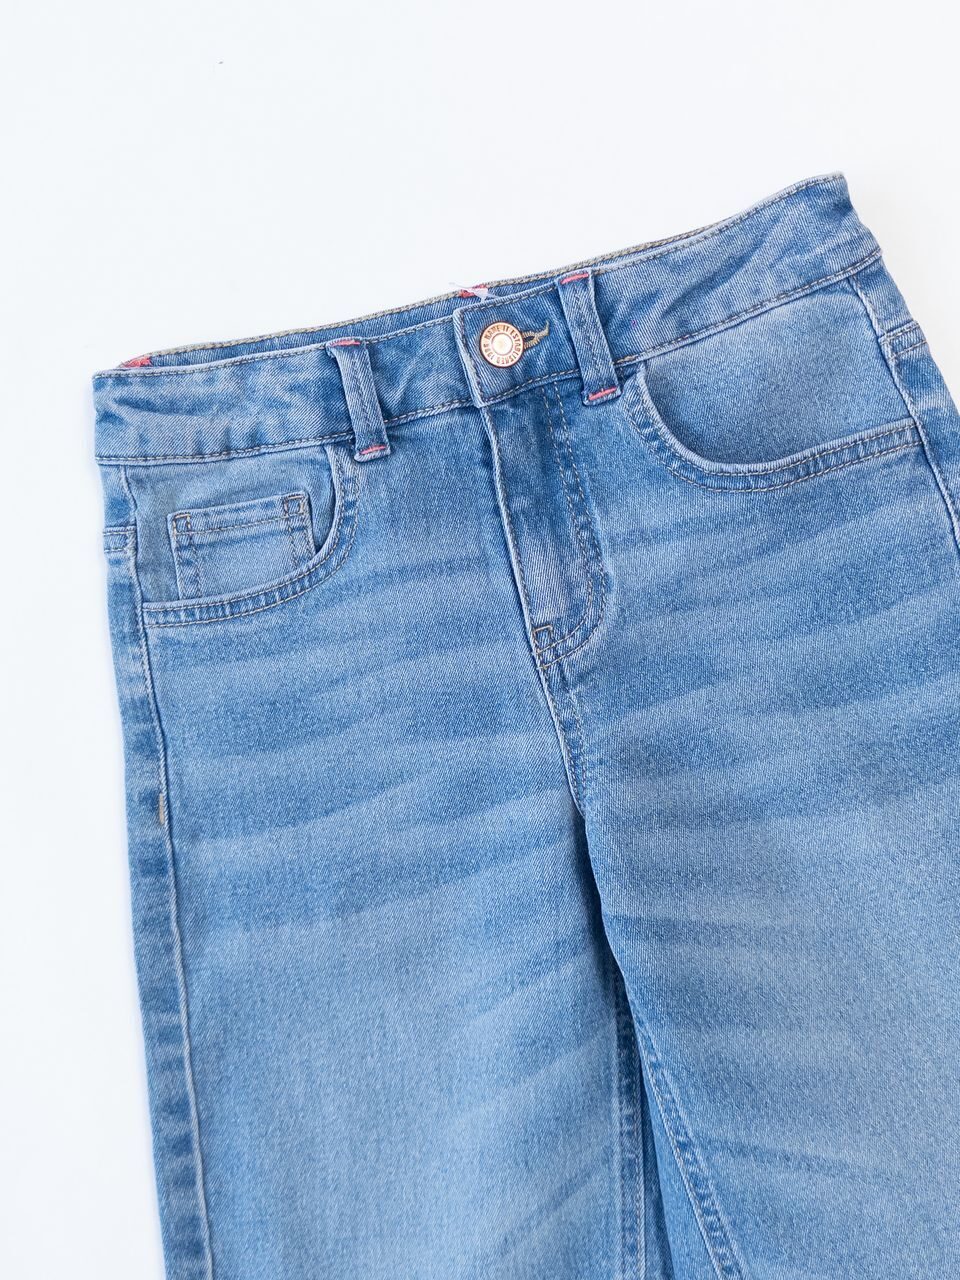 Шорты-бермуды джинсовые для девочки с утягивающей резинкой в поясе цвет голубой на рост 128 см 8 лет name it